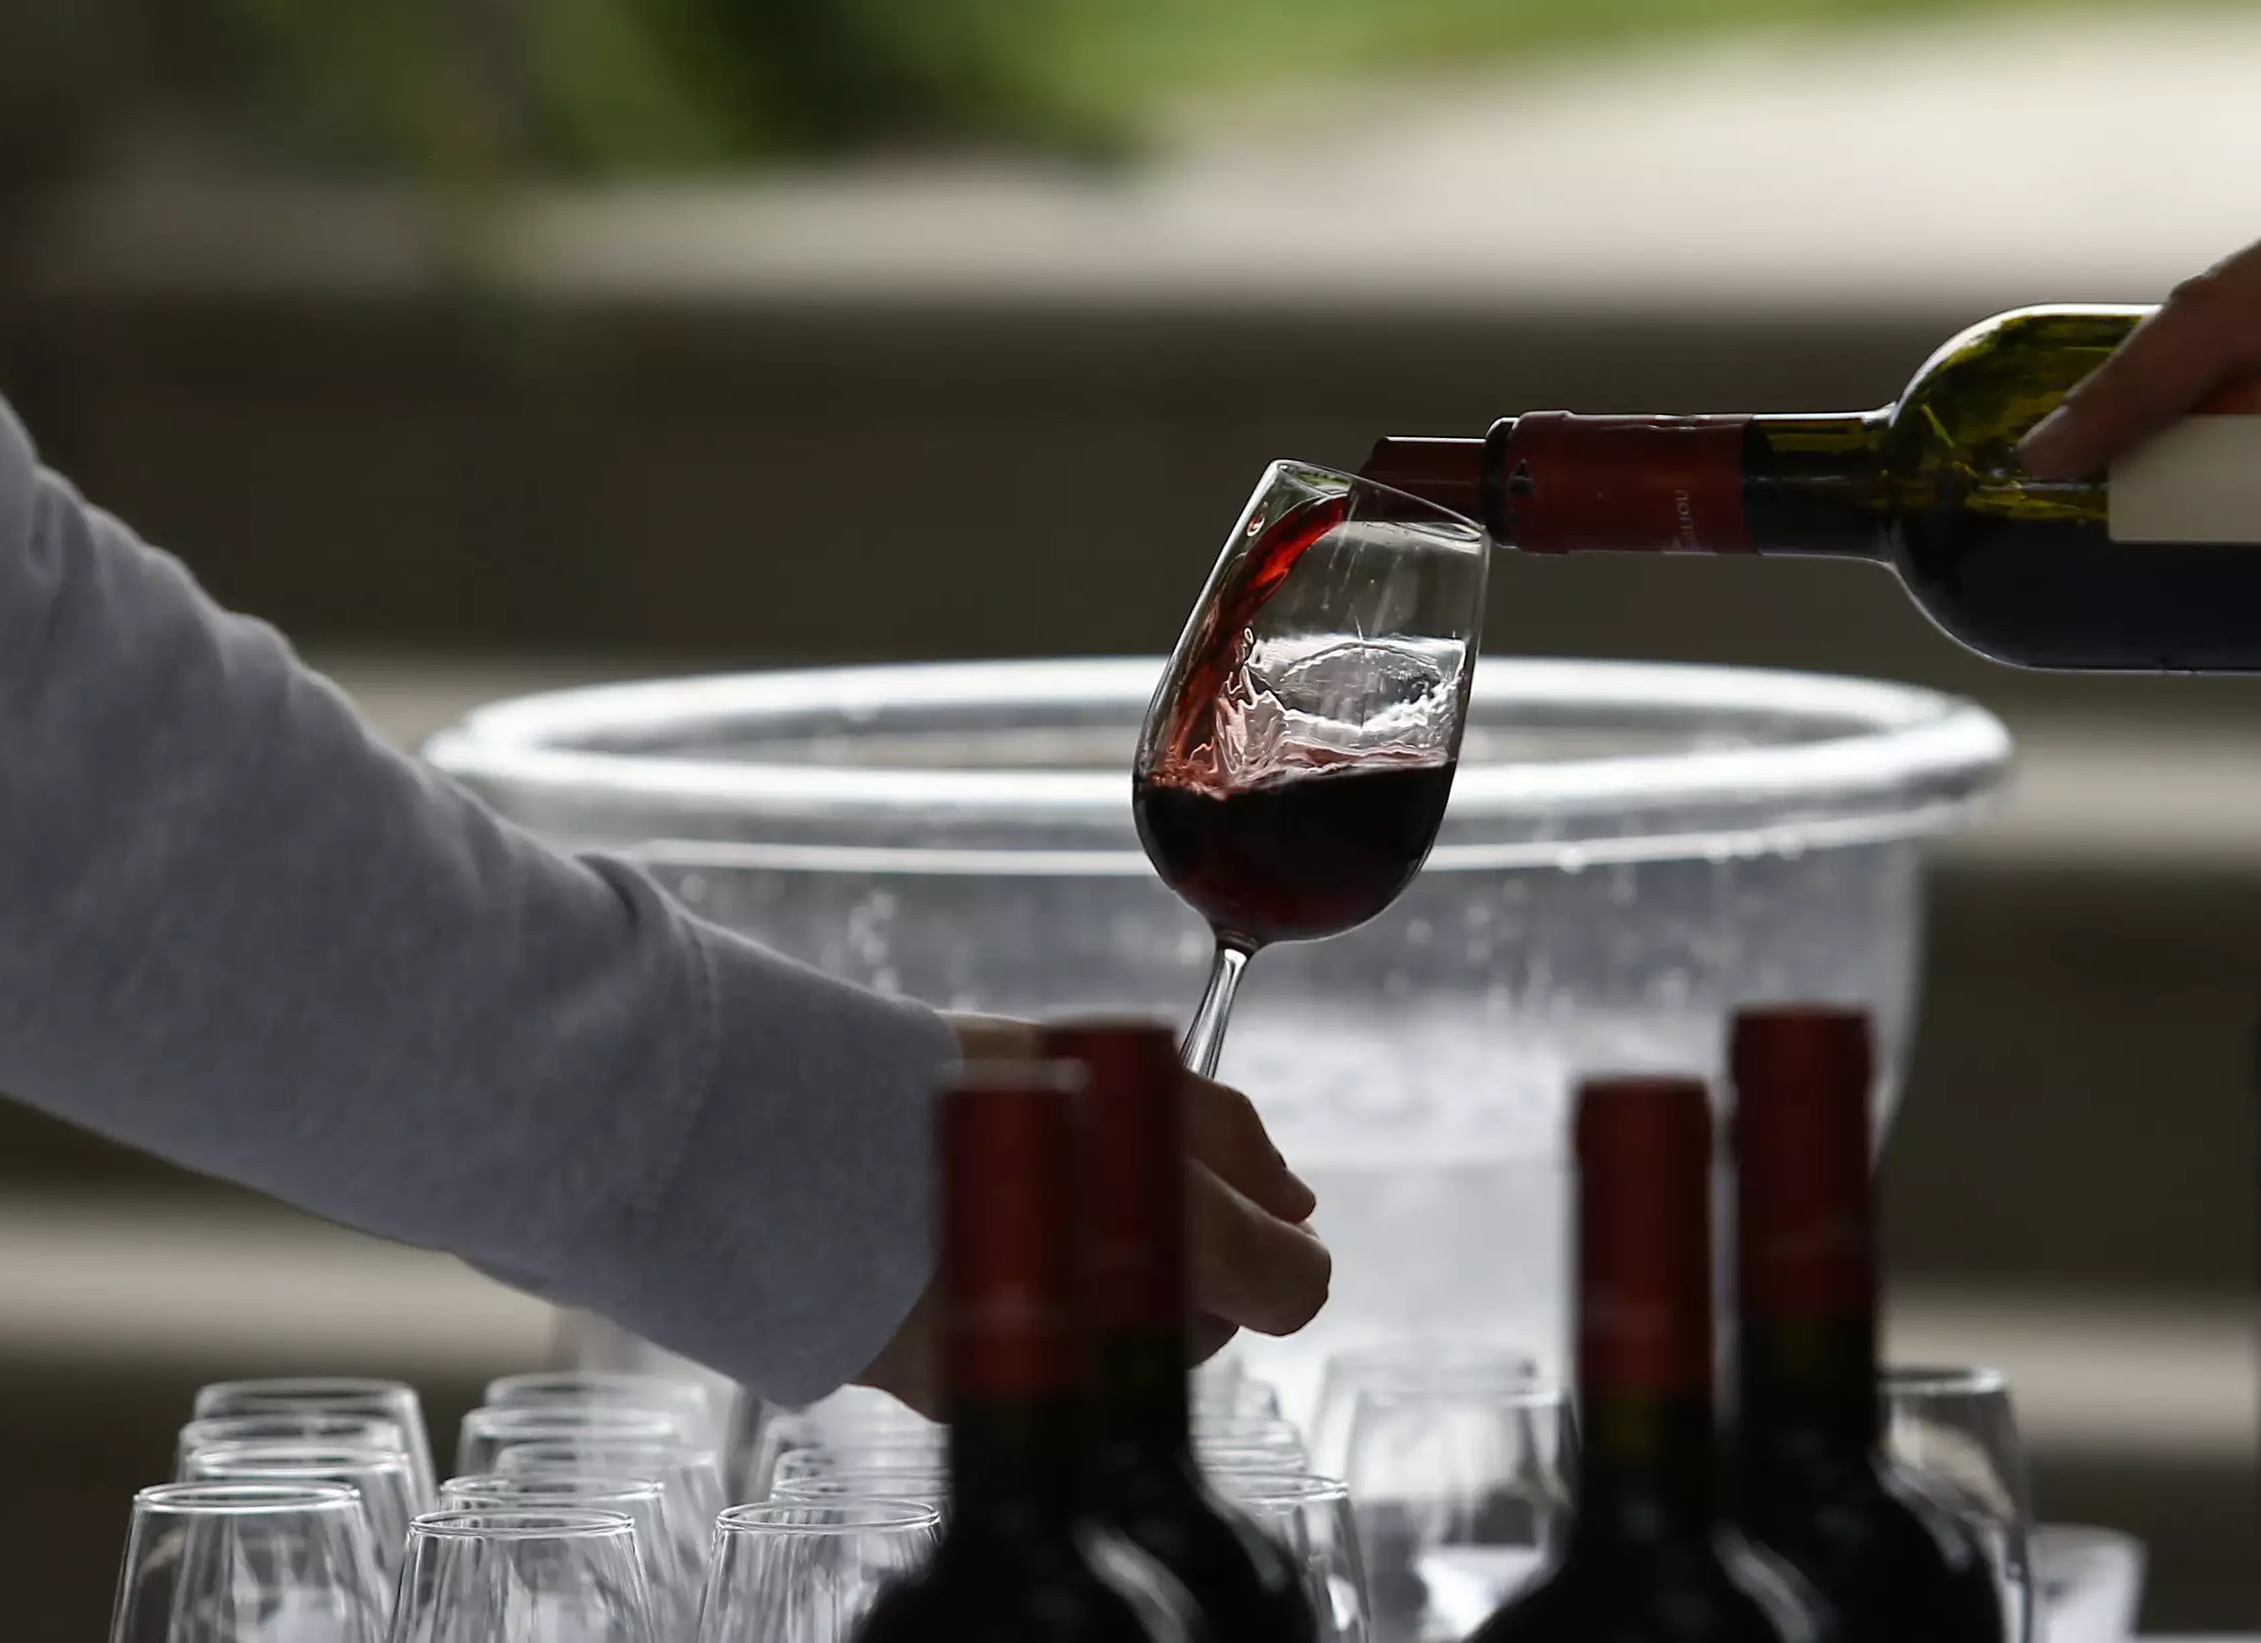 Οινόραμα: Tο Ζάππειο θα φιλοξενήσει τη μεγαλύτερη έκθεση κρασιών στον κόσμο